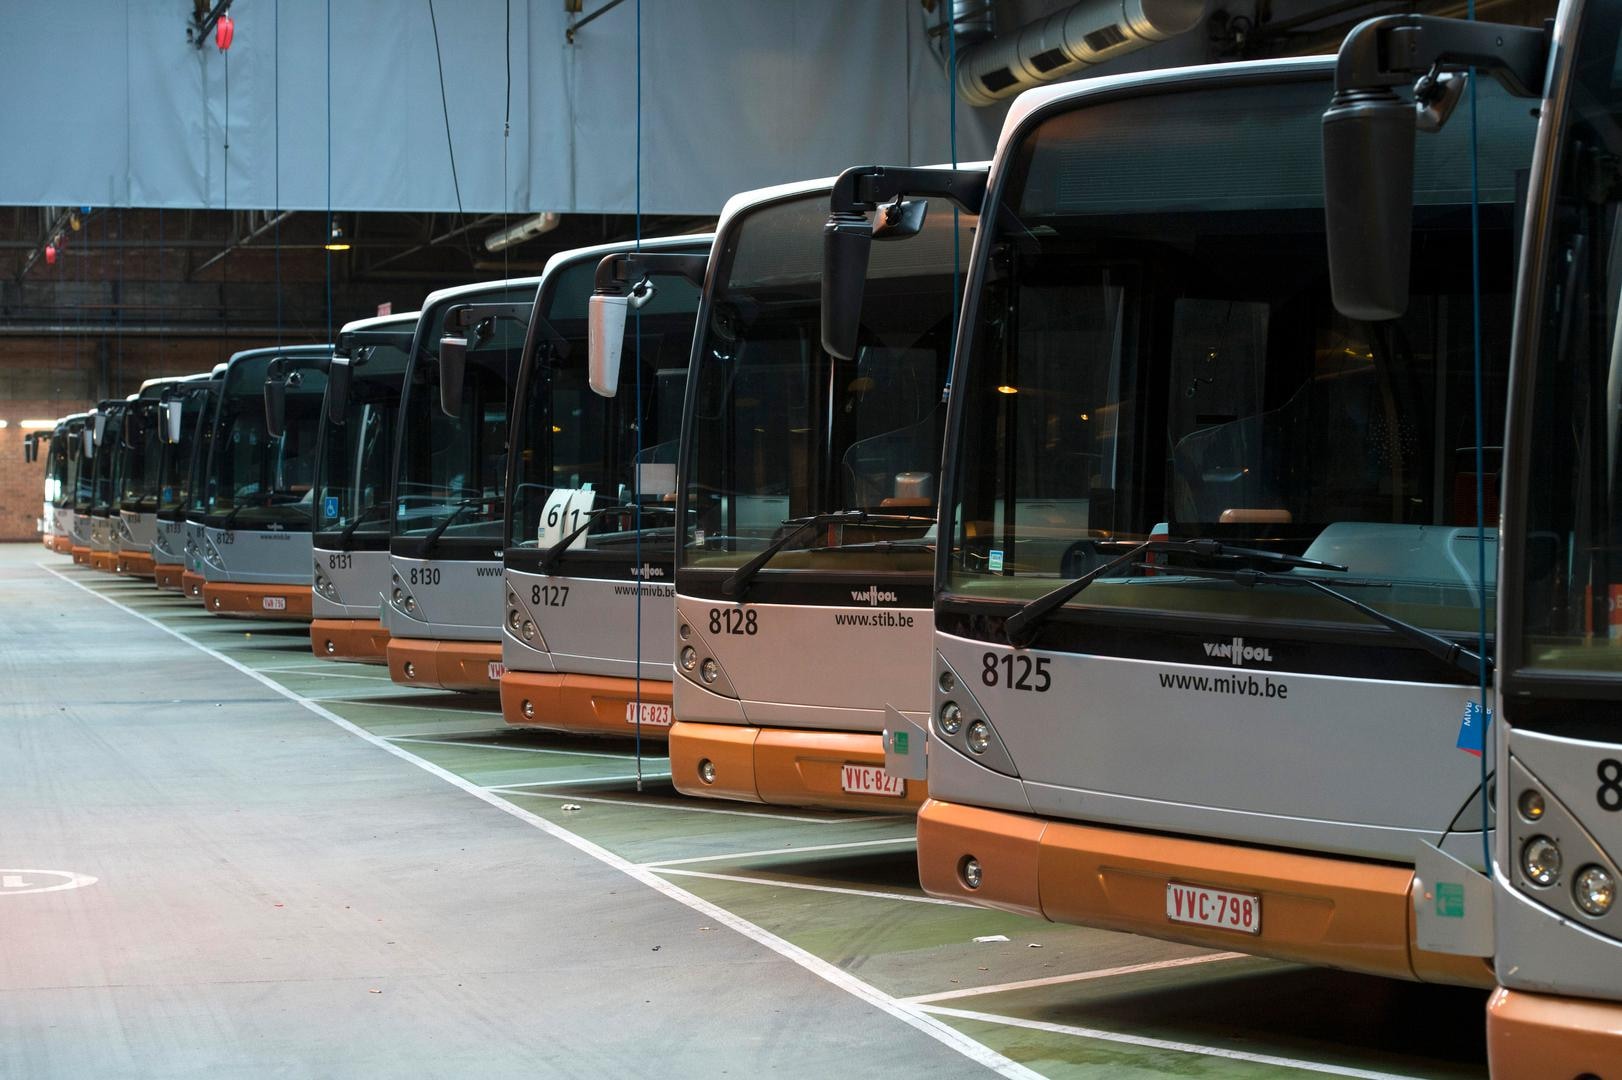 Pools bedrijf gaat eerste elektrische MIVB-bussen bouwen